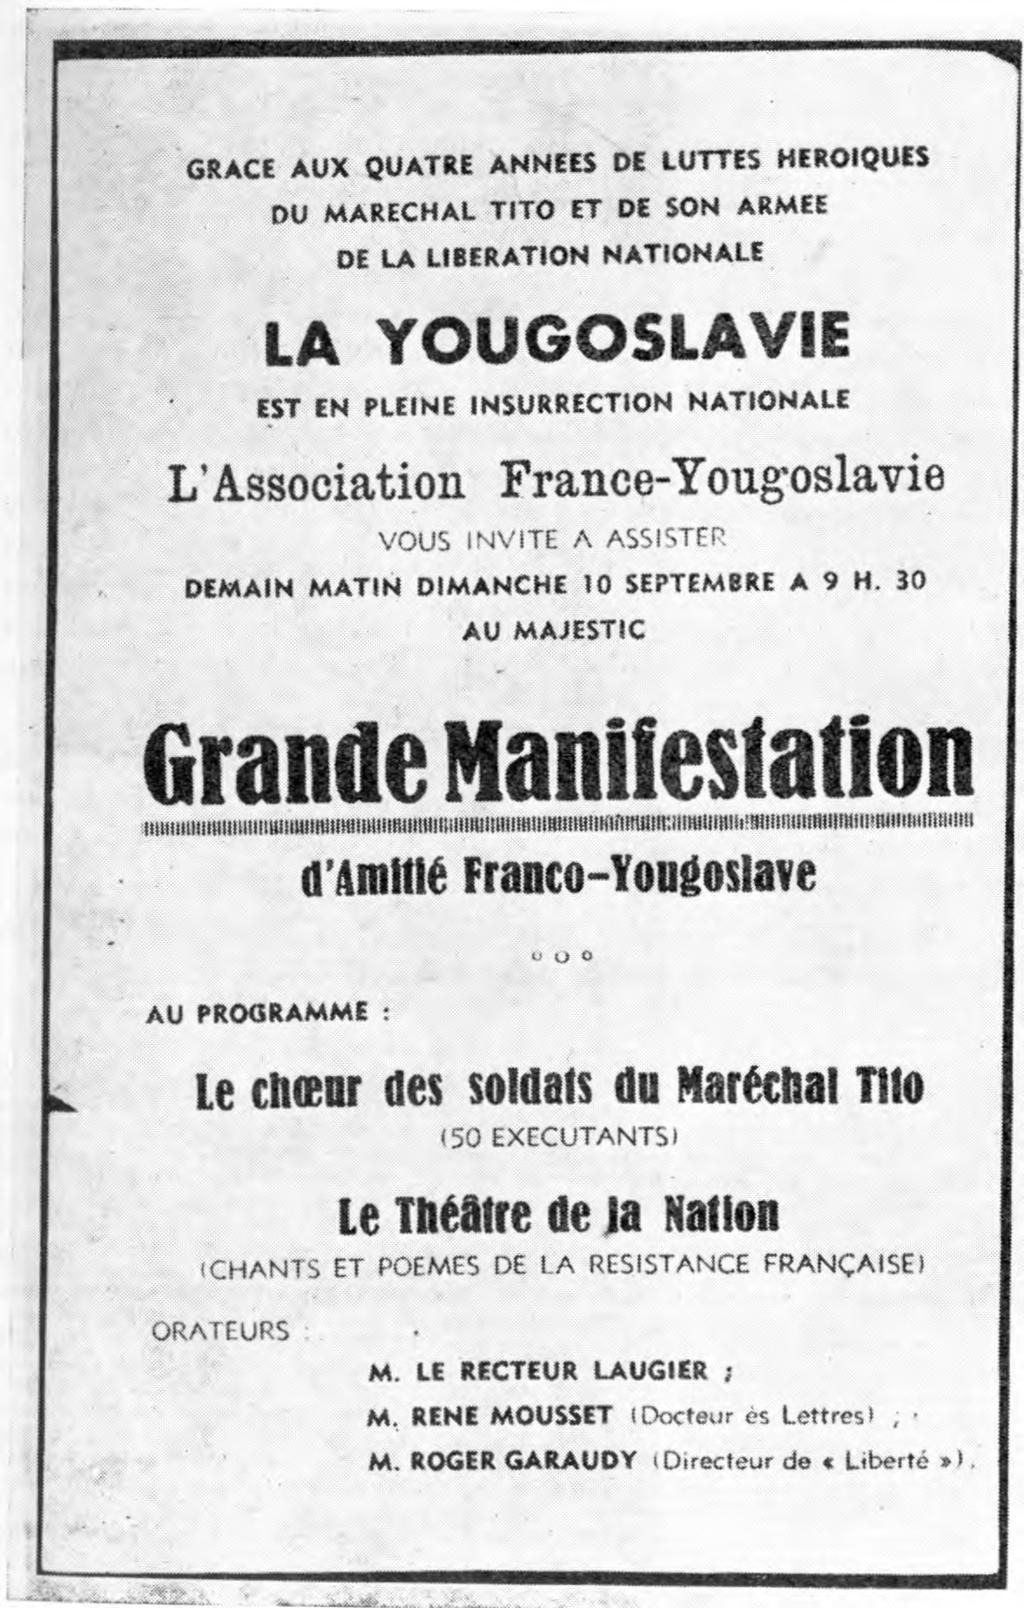 Vabilo združenja»francija-jugoslavija«na manifestacijo